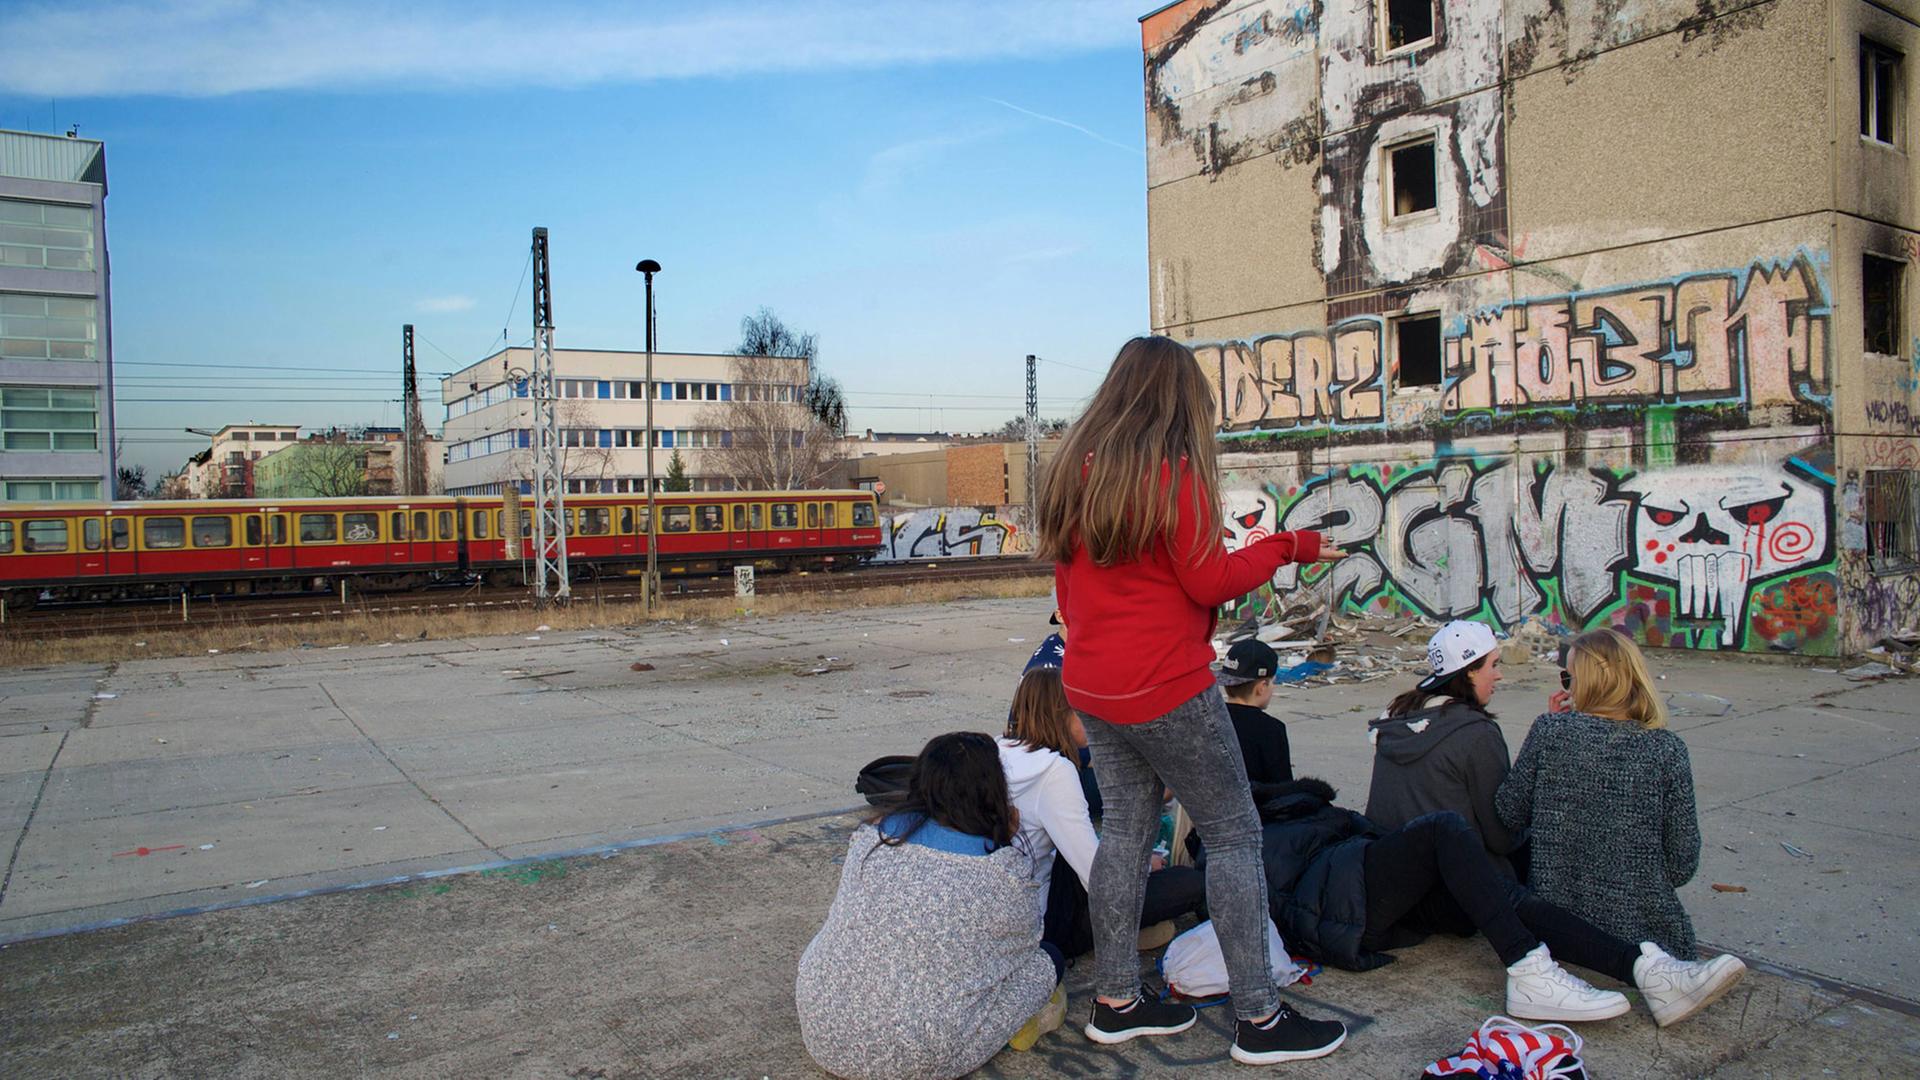 Jugendliche auf einer Brache vor einer Ruine (Plattenbau) in Berlin